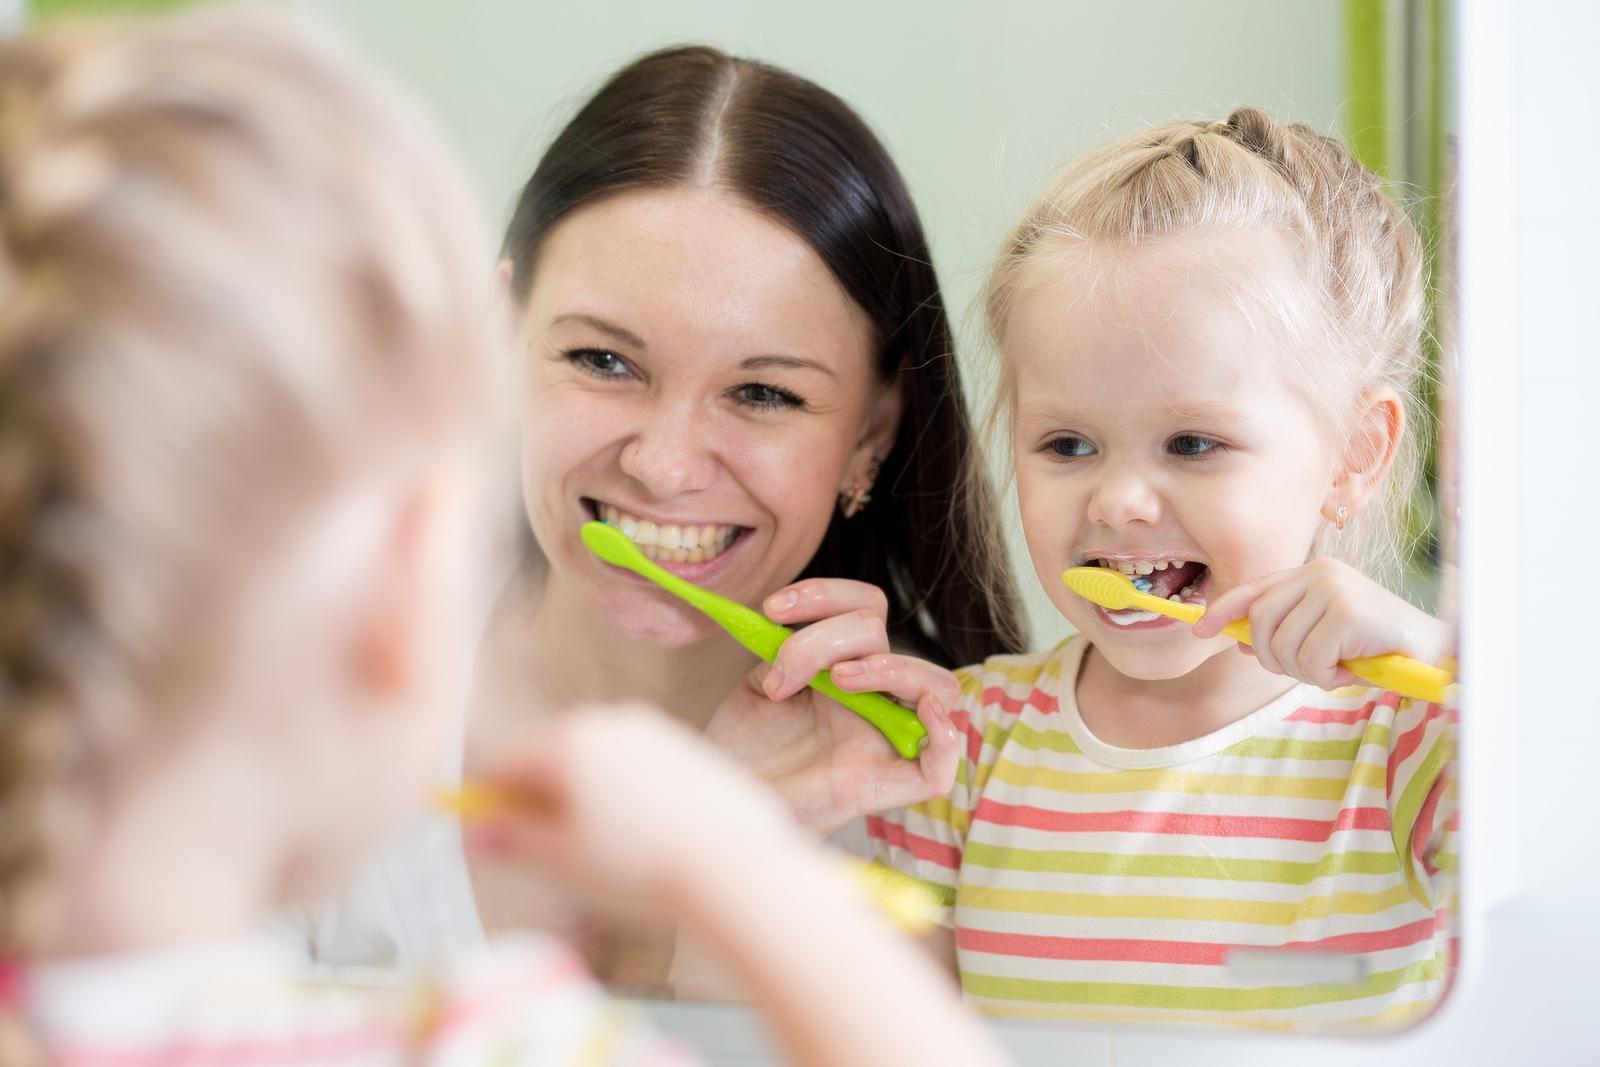 The Worrisome Decline of Children's Oral Health